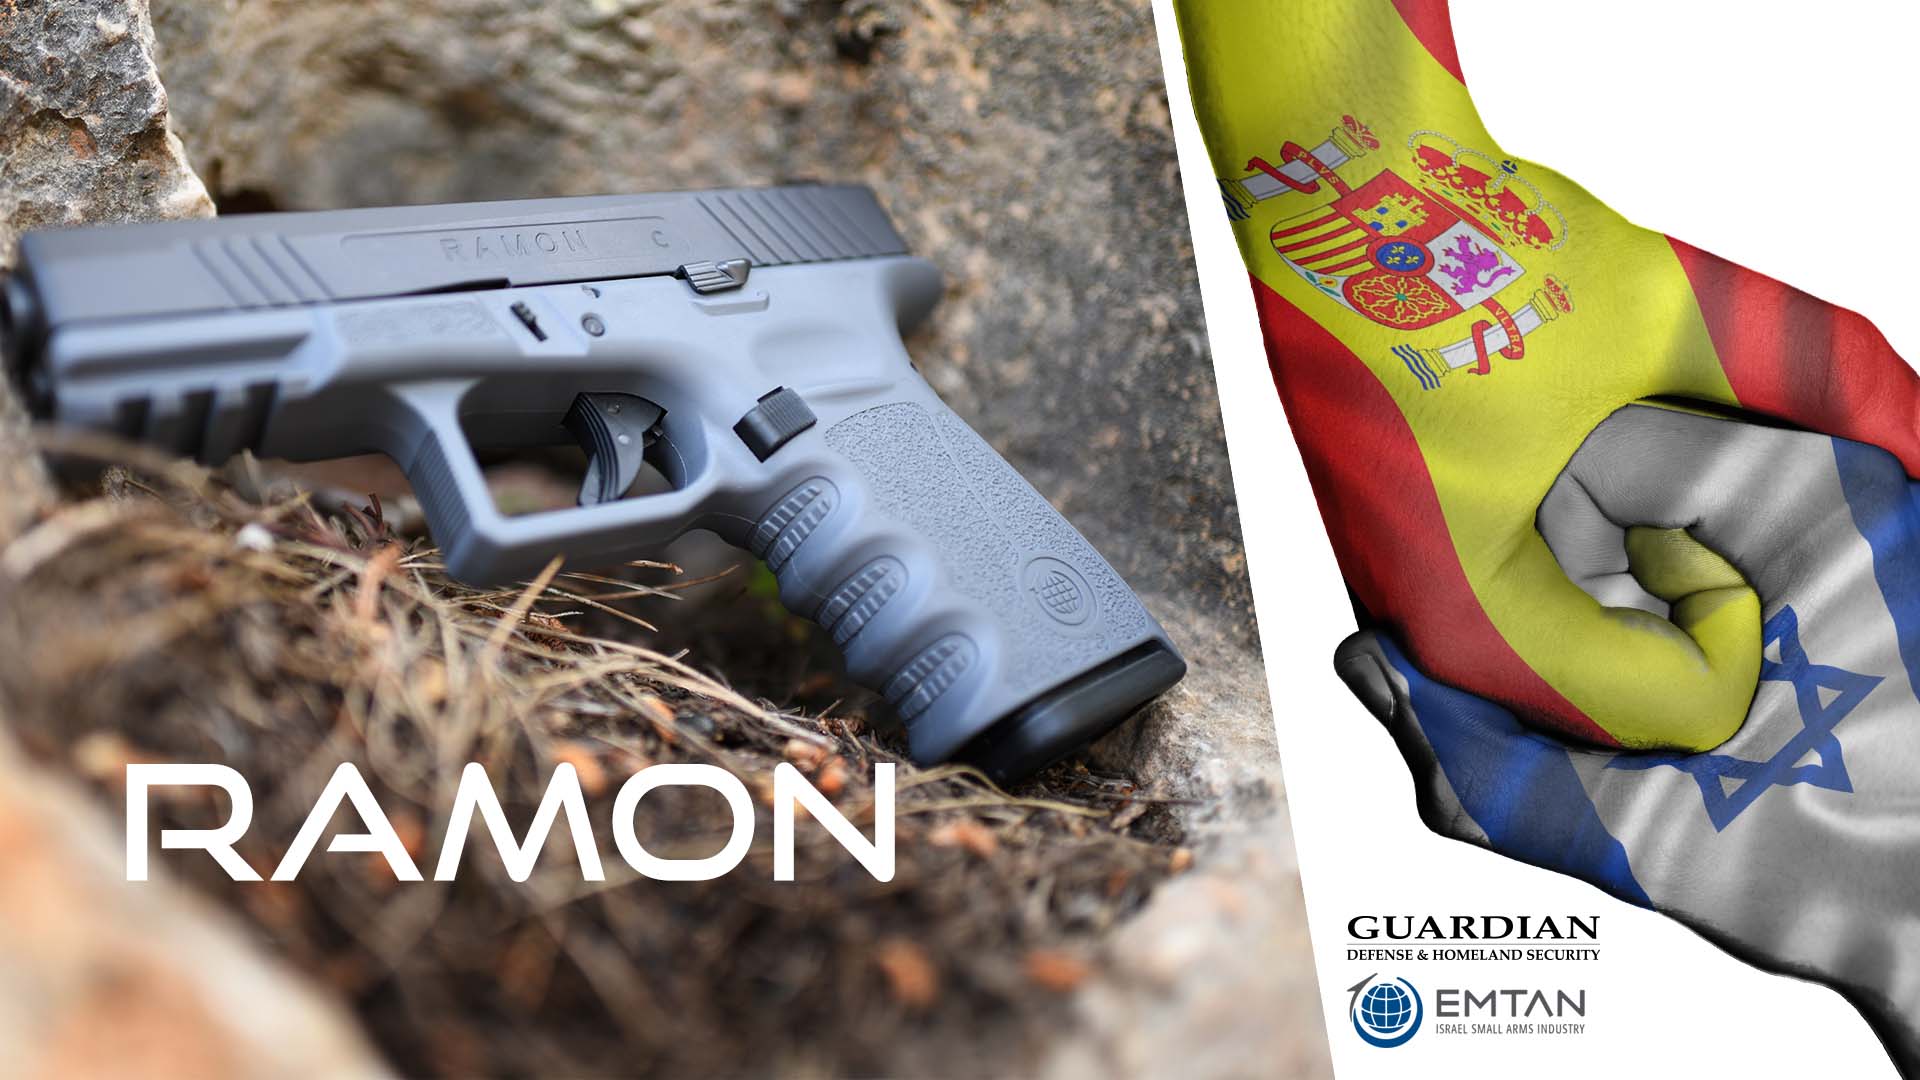 La nueva pistola Ramon y su historia